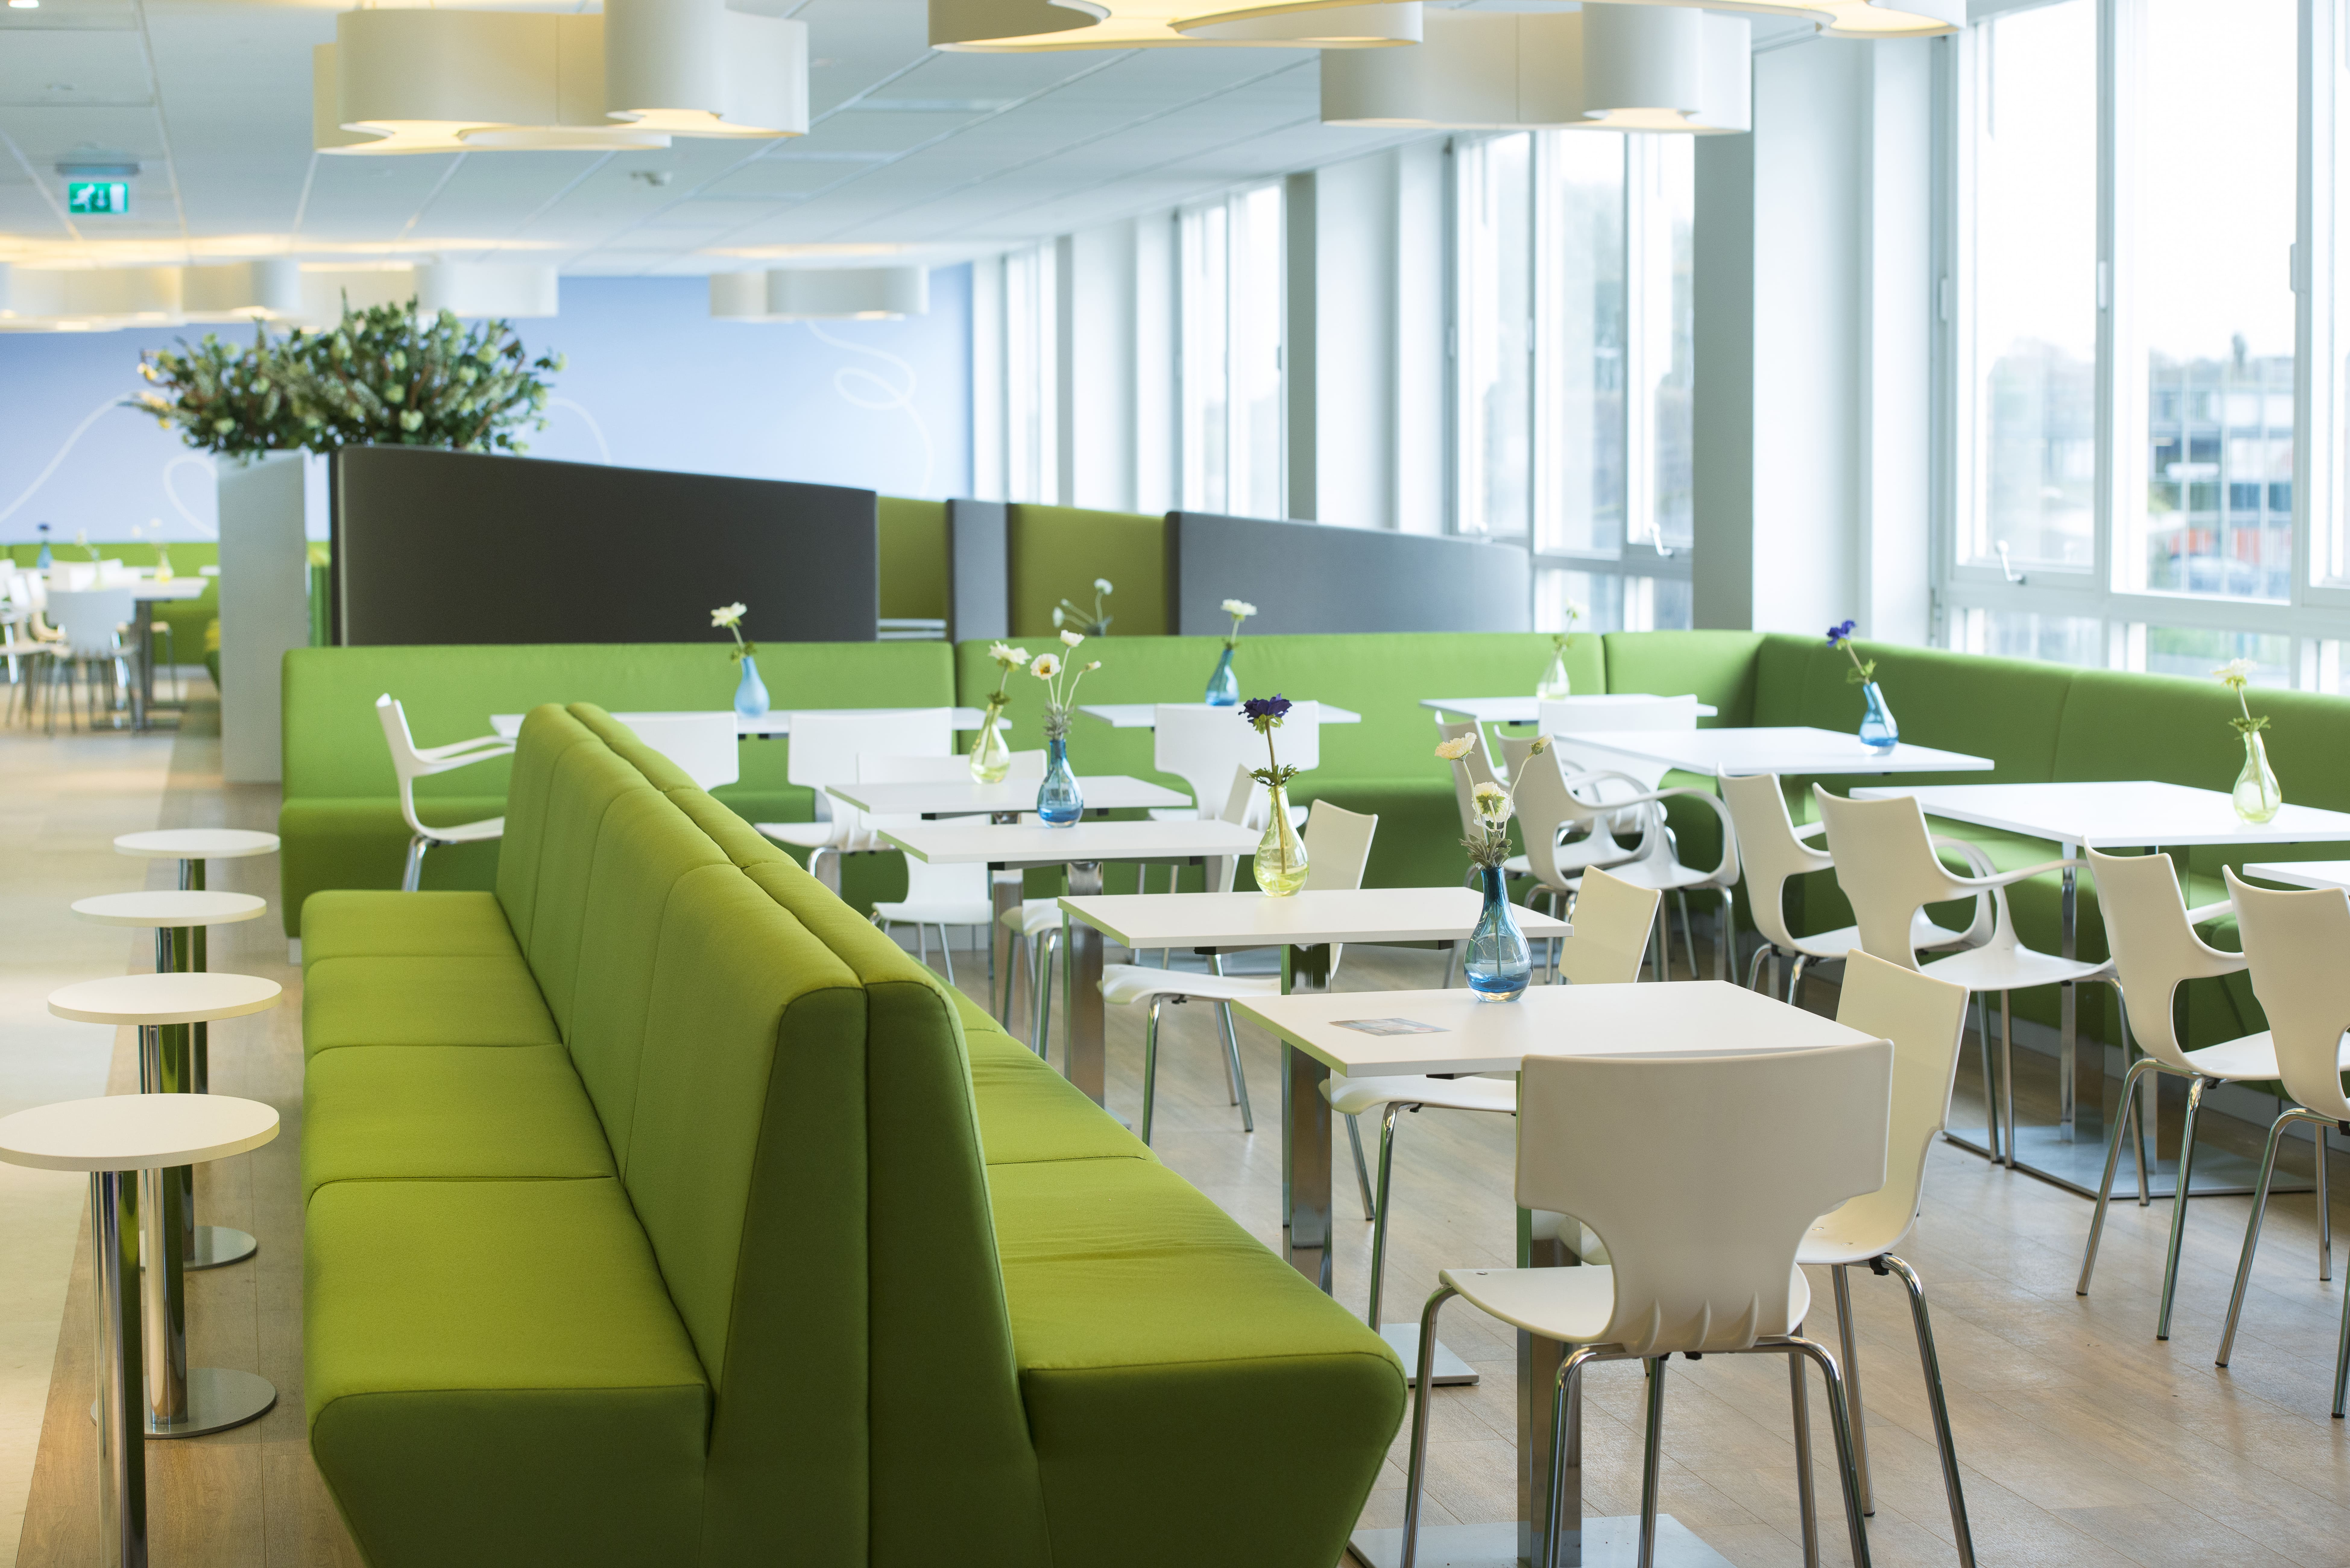 Ruimte in het Isala Ziekenhuis ingericht door Big Brands met lange groene banken met witte tafels en stoelen. Bloemen op de achtergrond en witte lampen aan het plafond.